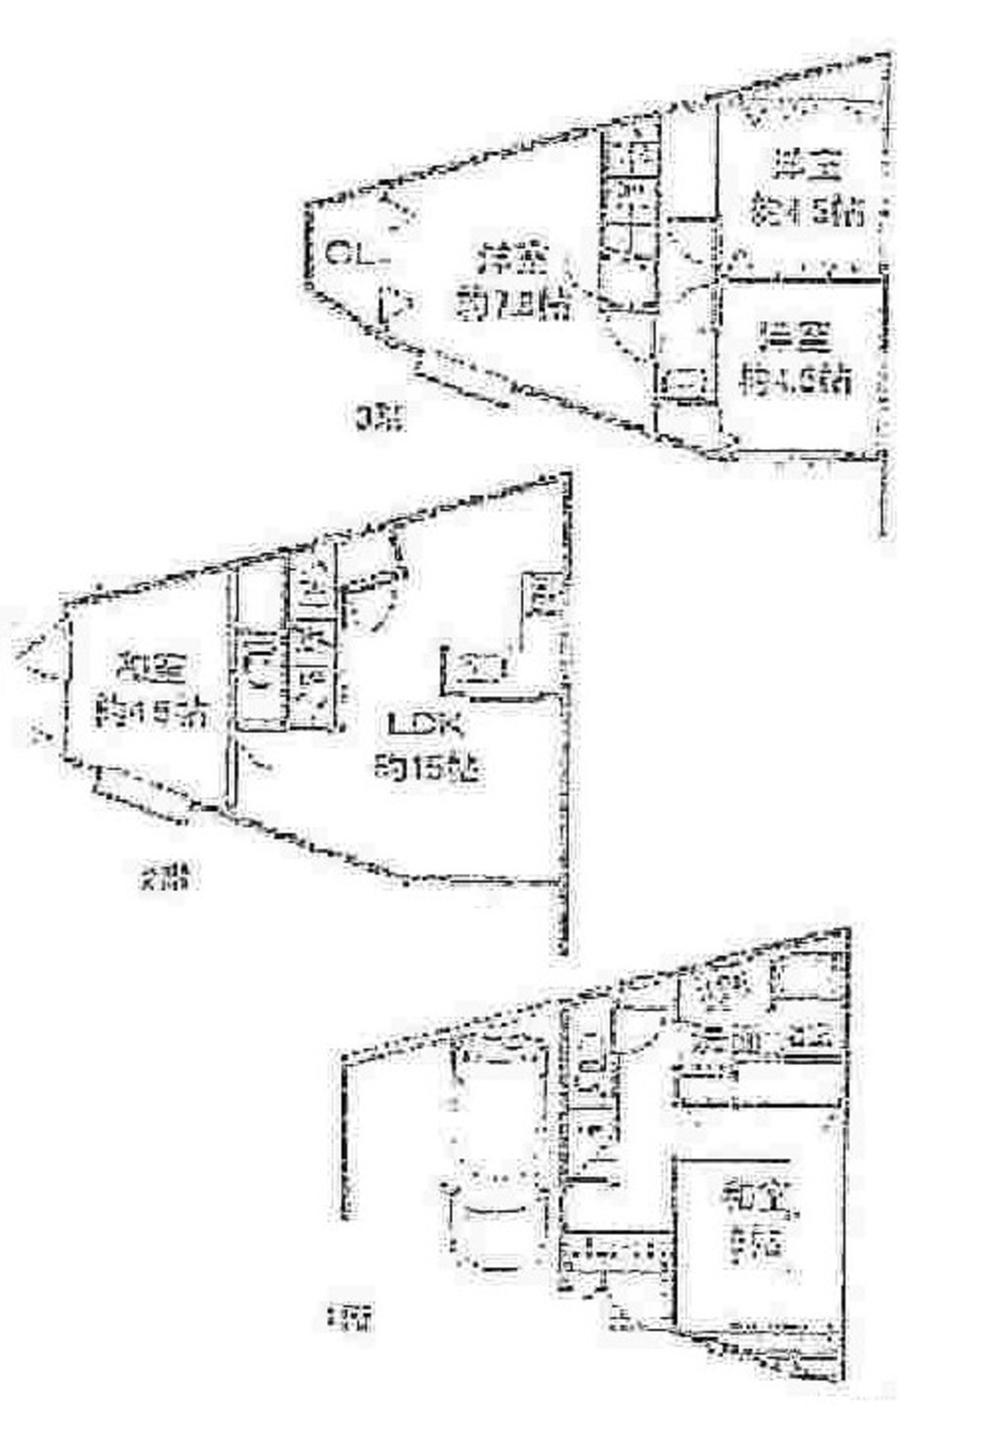 Floor plan. 23.8 million yen, 5LDK, Land area 60.22 sq m , Building area 127.71 sq m